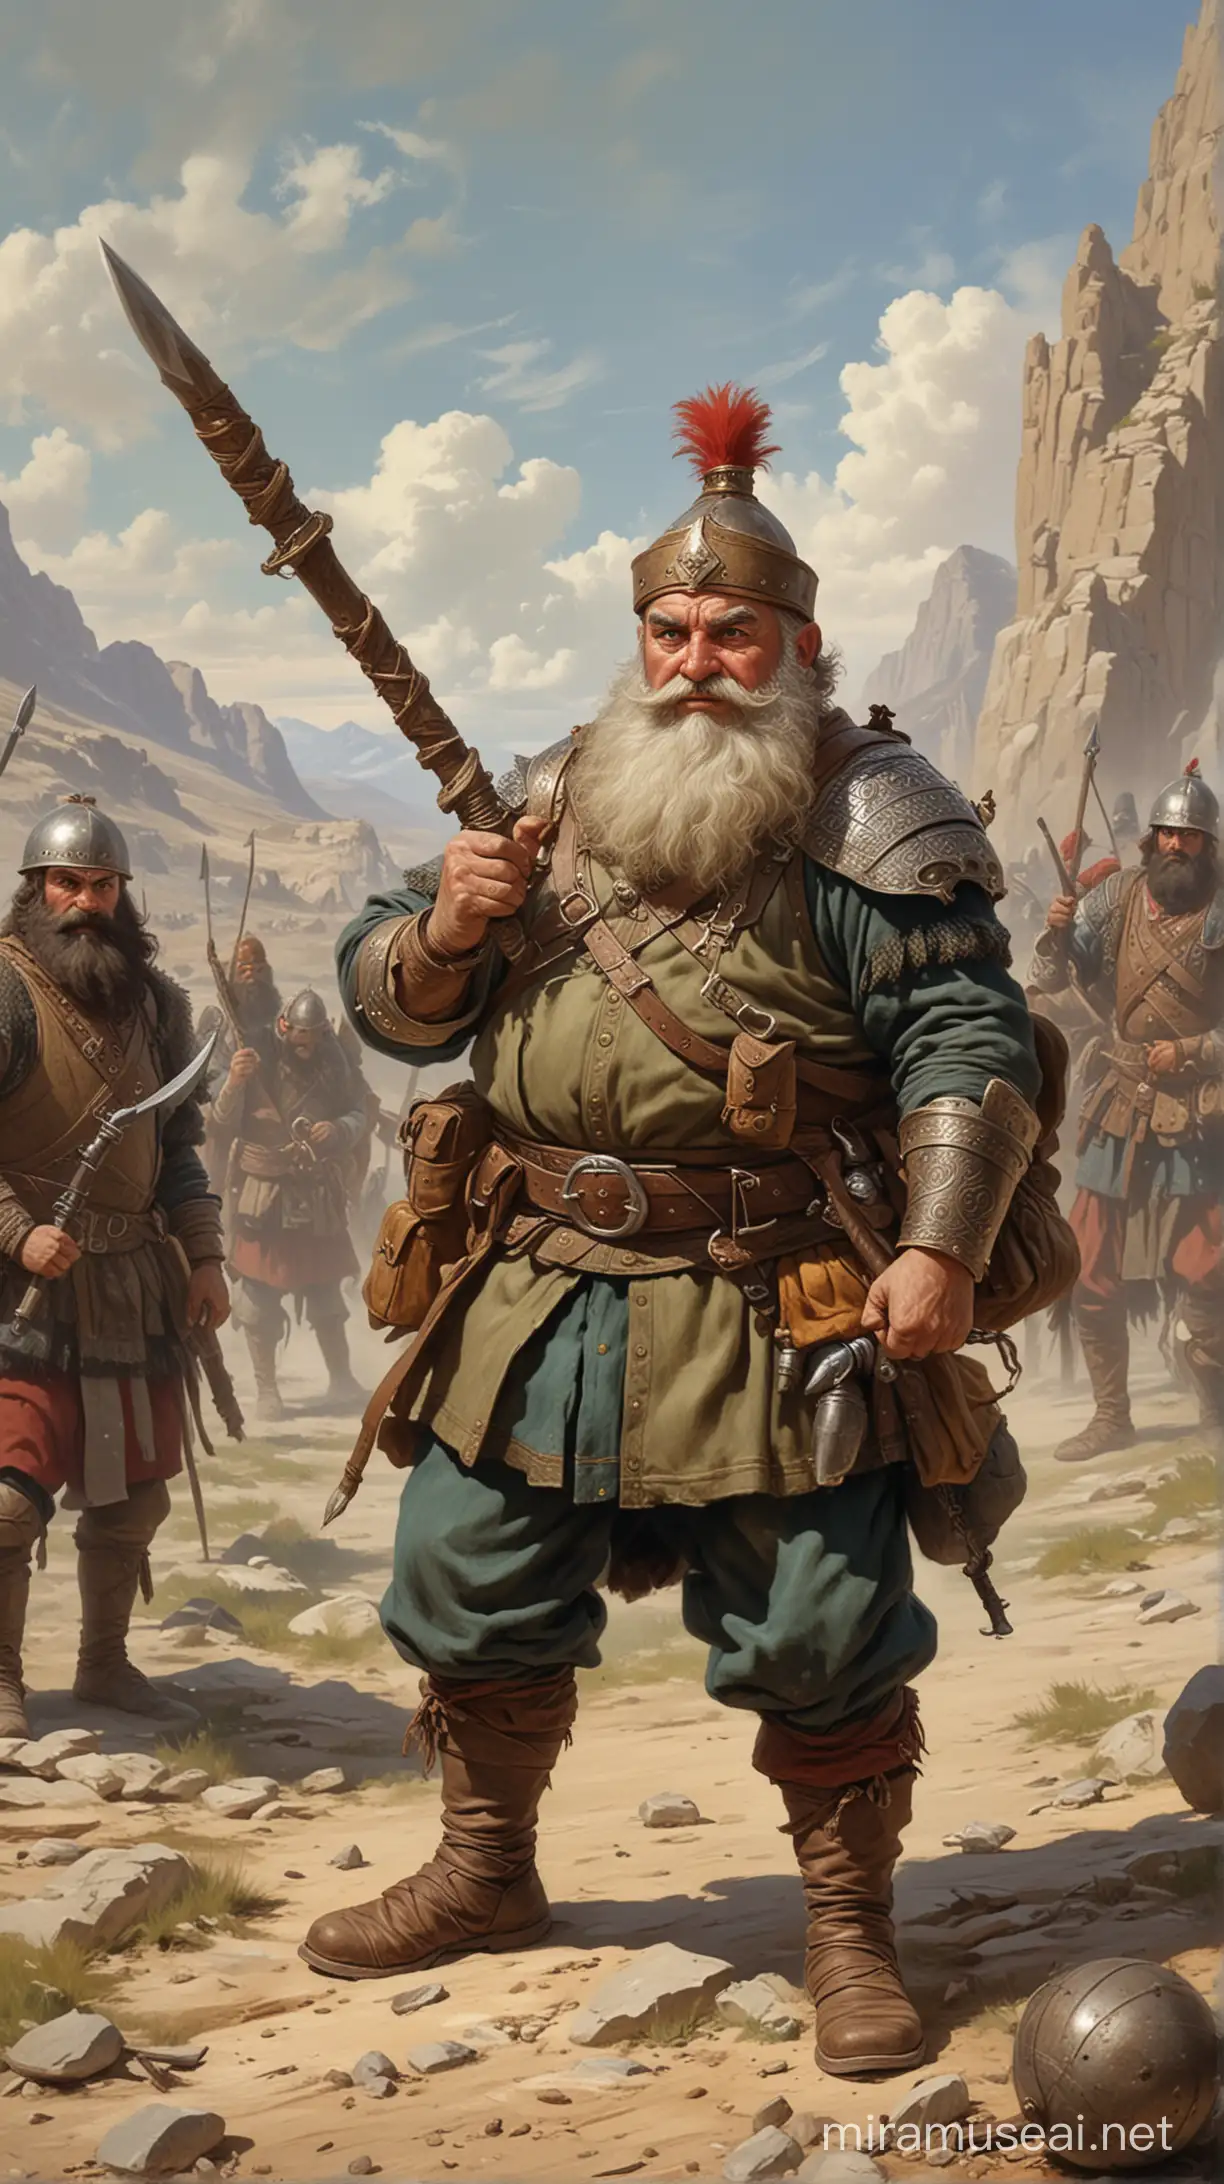 DwarfSized Warrior Grbz Alp MaceWielding Hero of Quirky Bravery